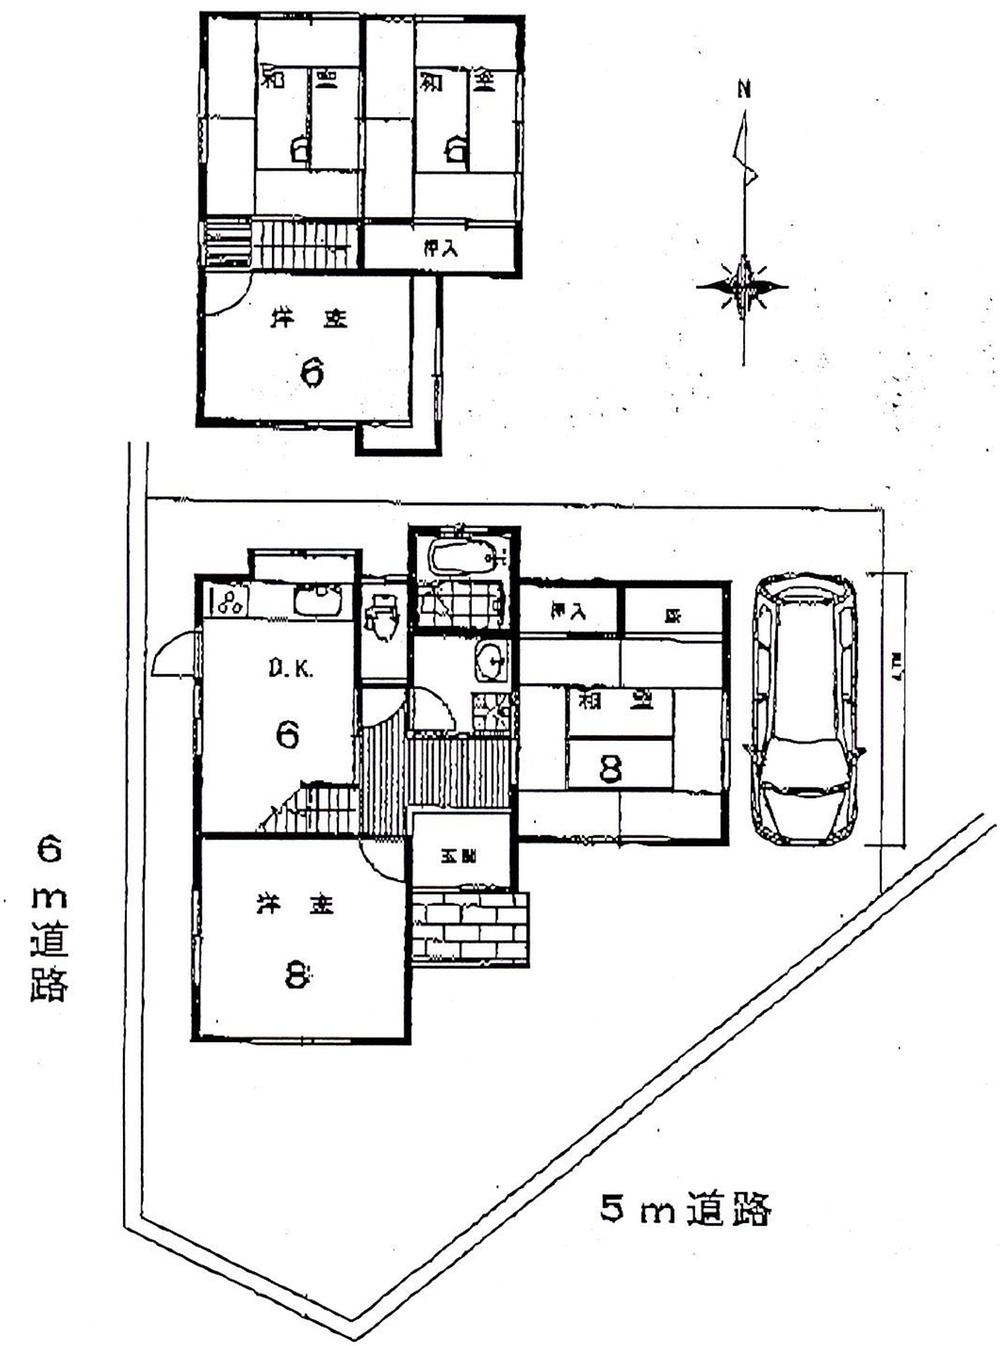 Floor plan. 24,800,000 yen, 5DK, Land area 149.59 sq m , Building area 89.1 sq m